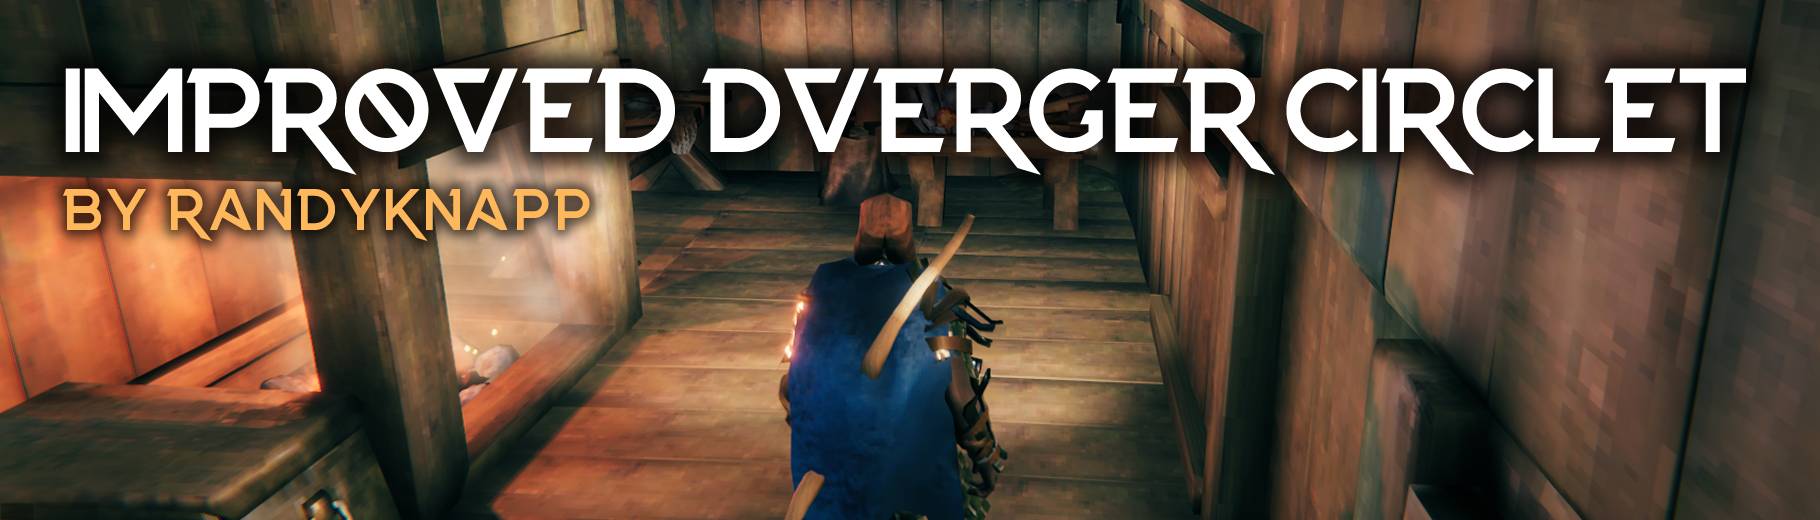 Improved Dverger Circlet - Мод для улучшения Диадема Двергера